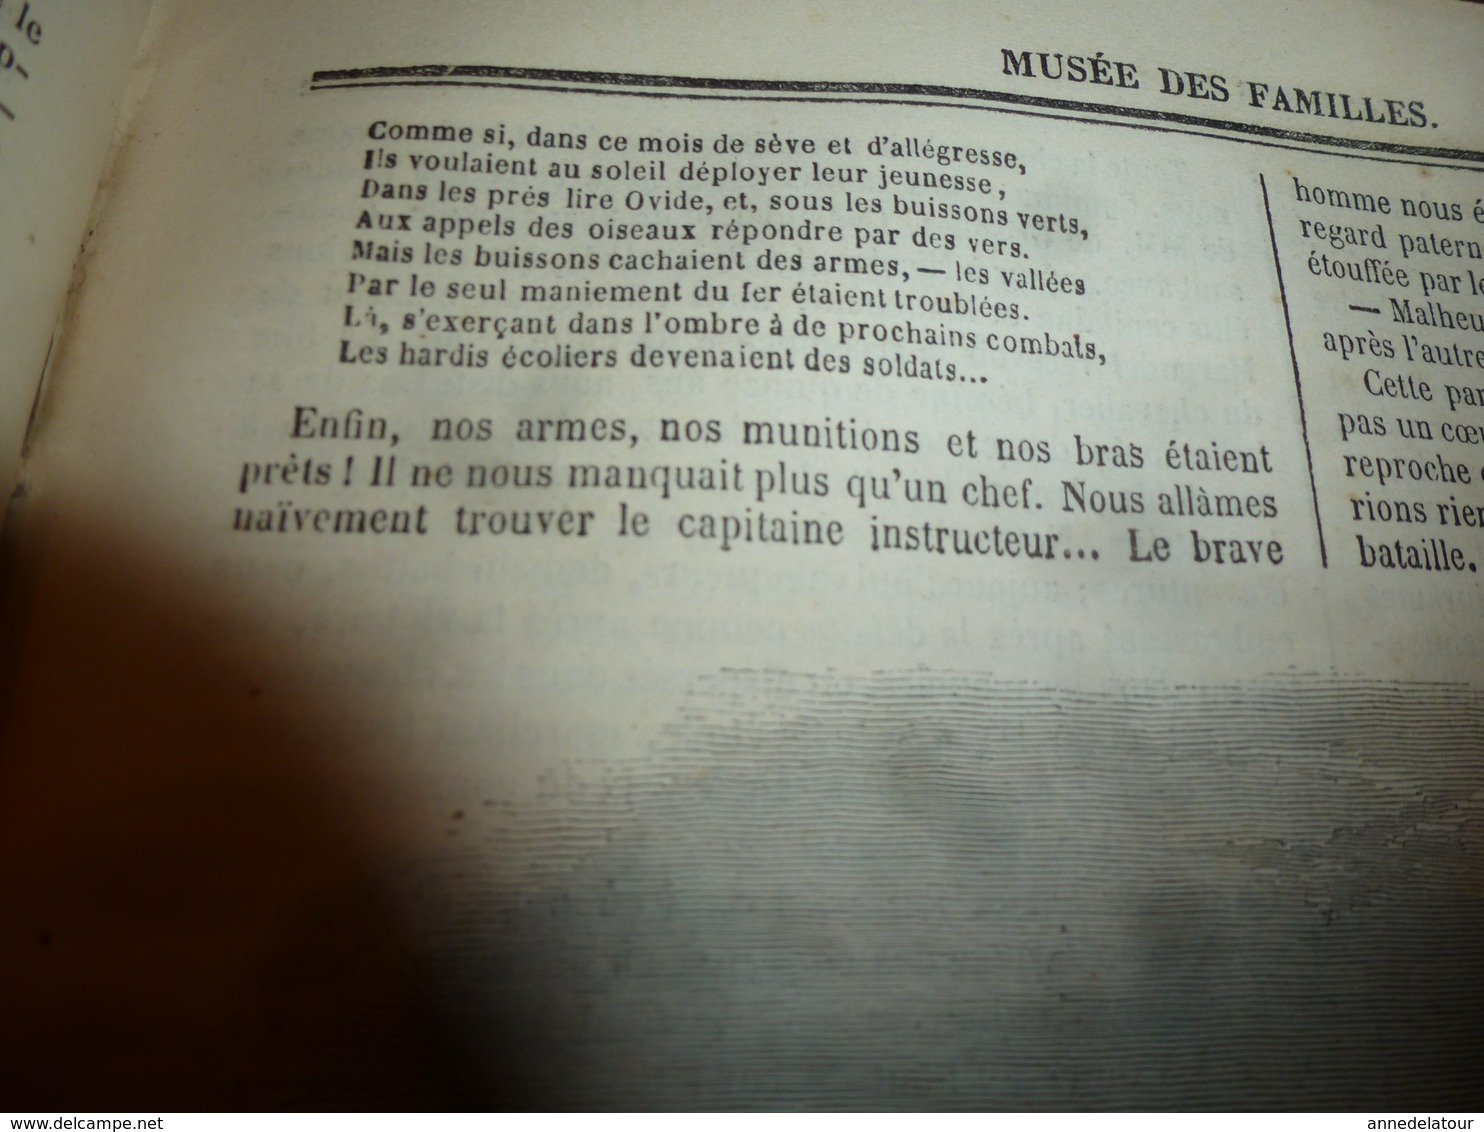 1846-1847 MUSÉE DES FAMILLES----> Voyage en BRETAGNE (Morbihan,Pélerinage de Ste-Anne-d'Auray) et nombreux autres pays